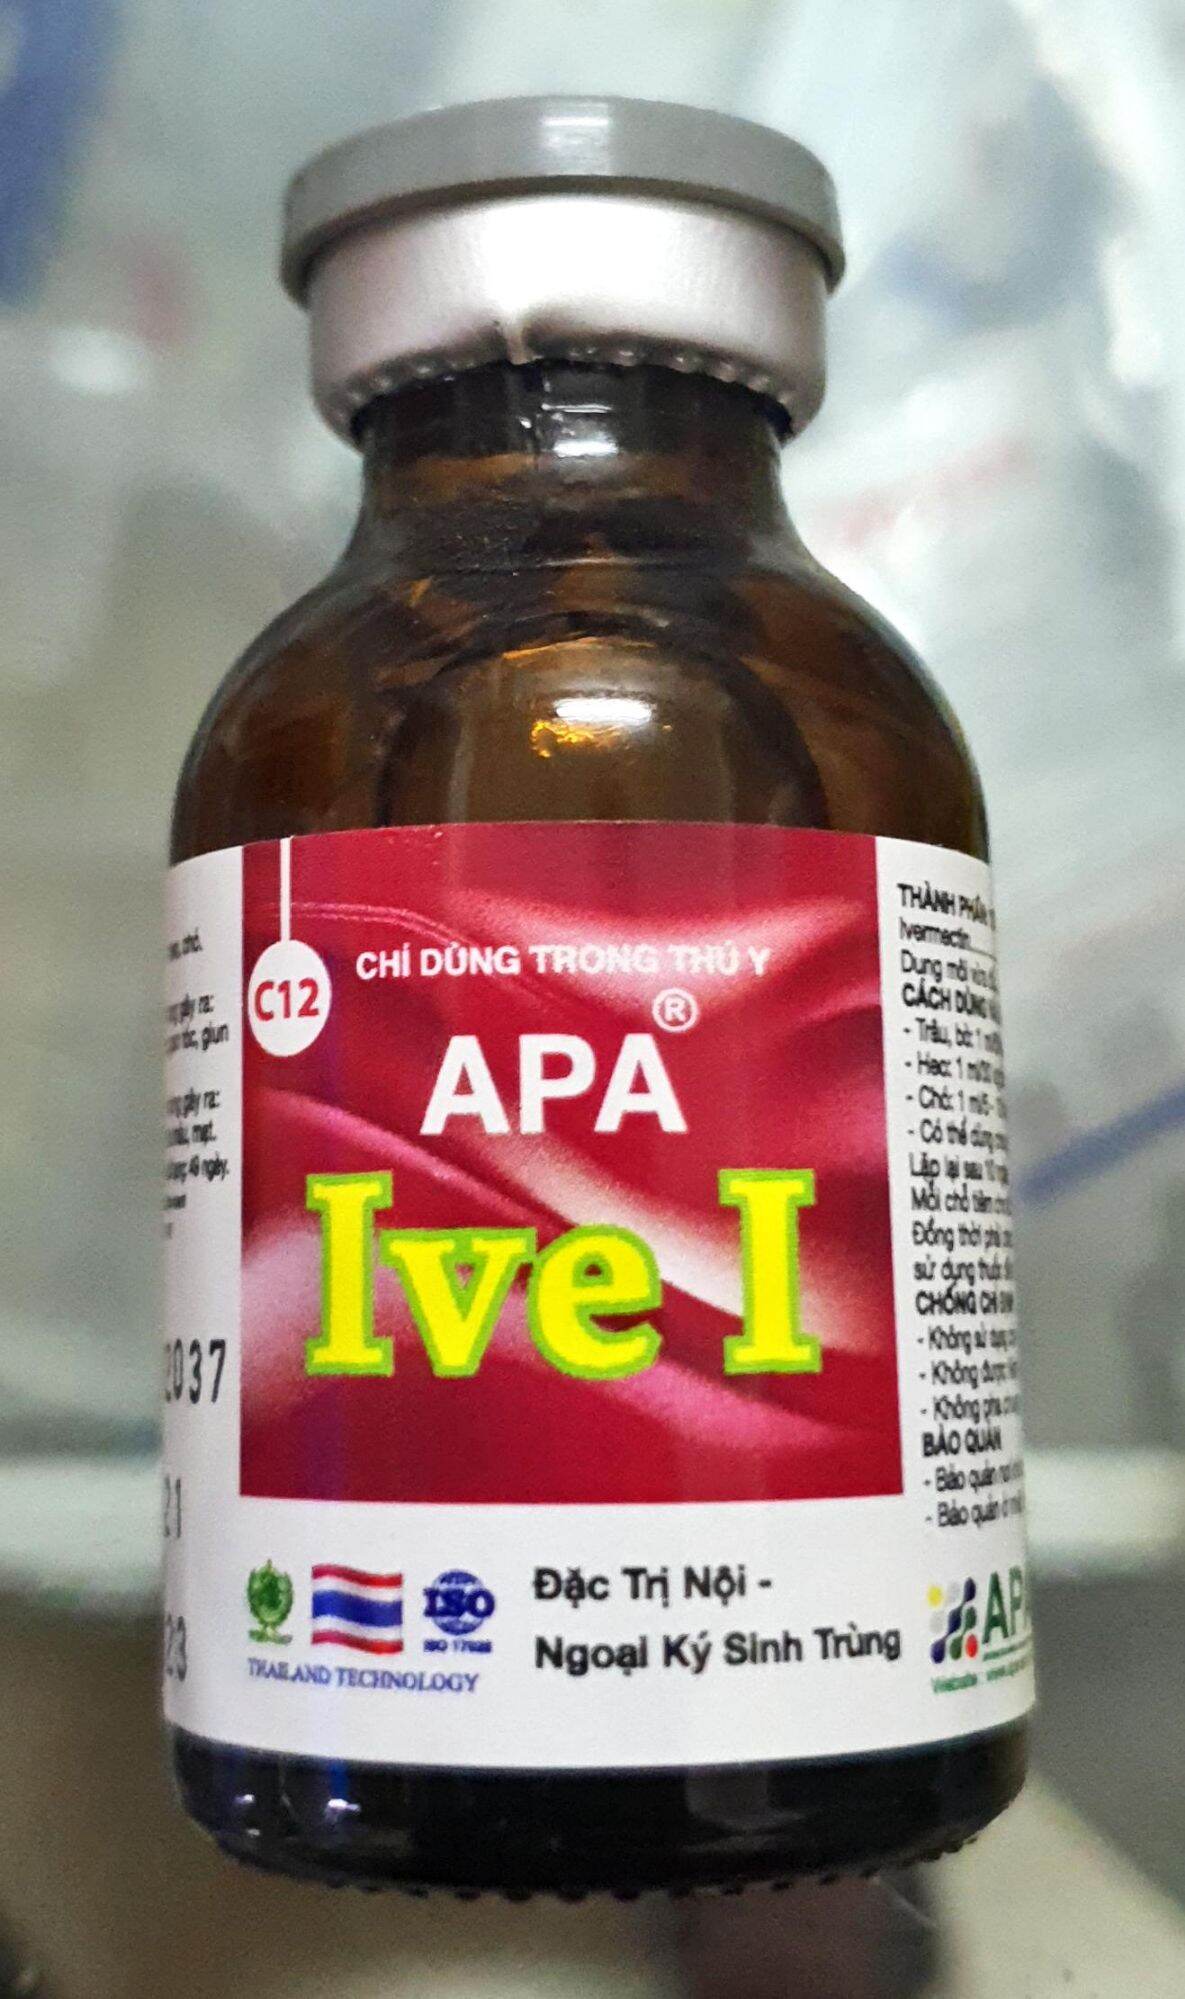 Ivermectin Thái Lan 1% (20ml) - Đặc tr.i. nội ngoại kí sinh trùng hàm lượng cao